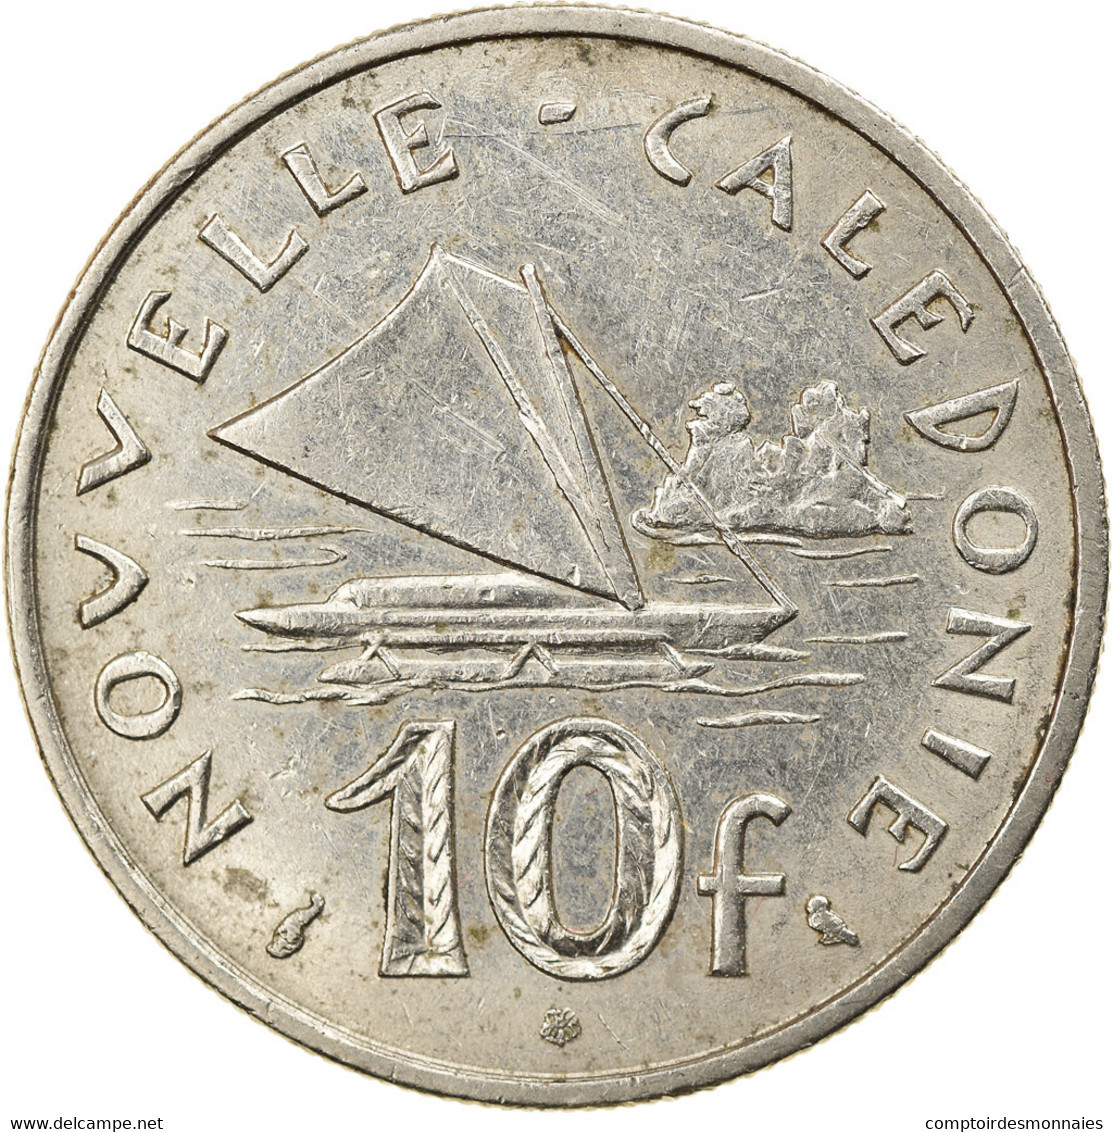 Monnaie, Nouvelle-Calédonie, 10 Francs, 1972, Paris, TTB, Nickel, KM:11 - Neu-Kaledonien